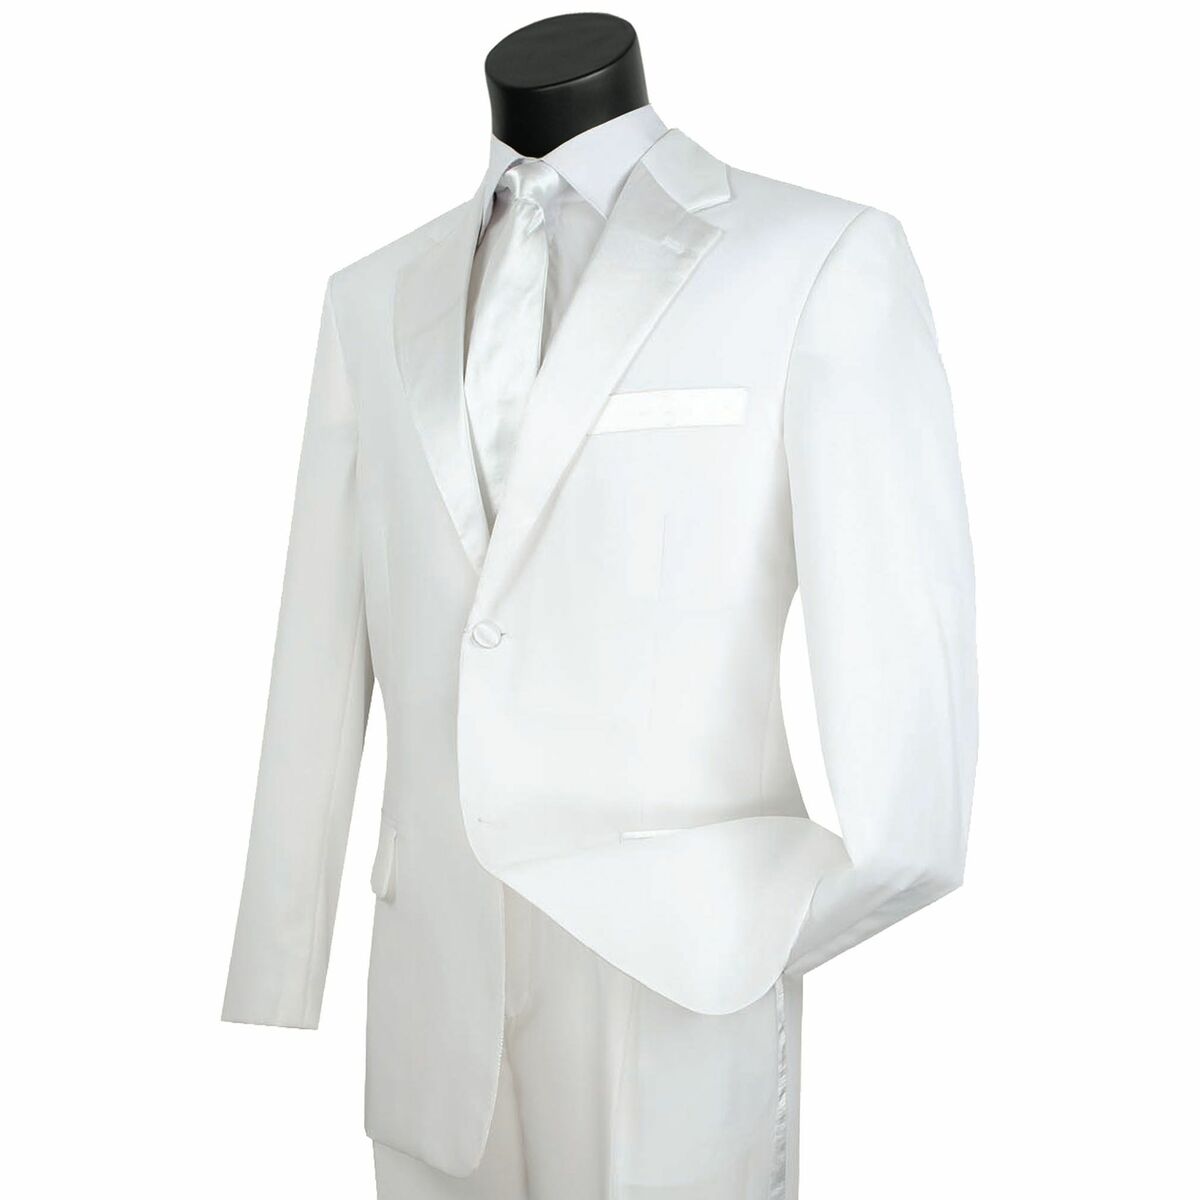 Men white suits